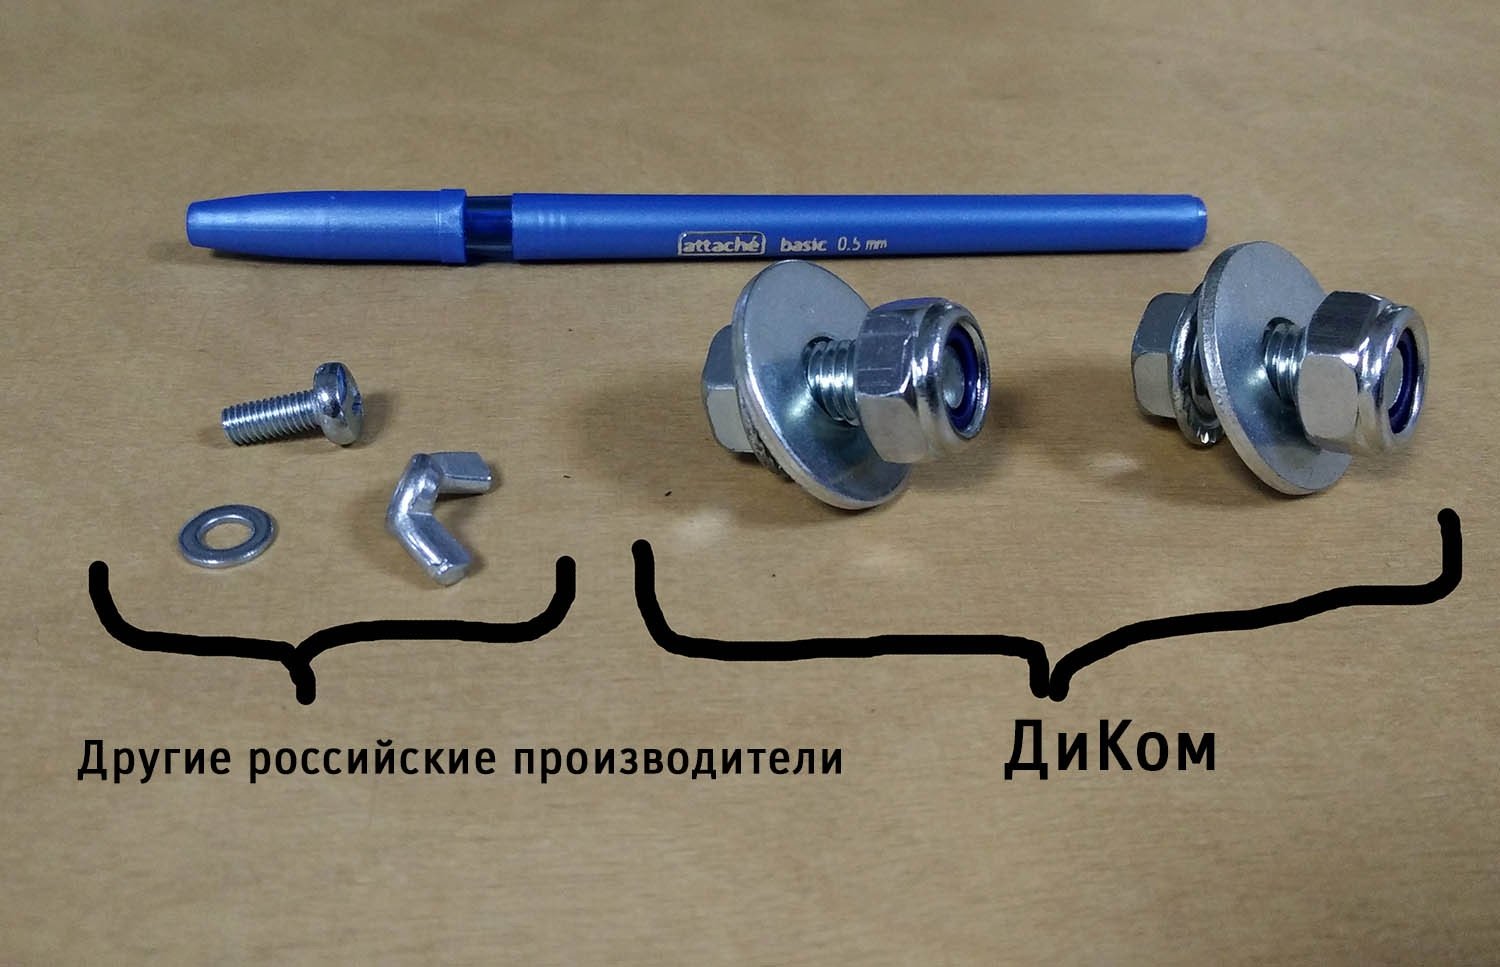 На фото слева — метизы других российских производителей, справа — метизы ДиКом